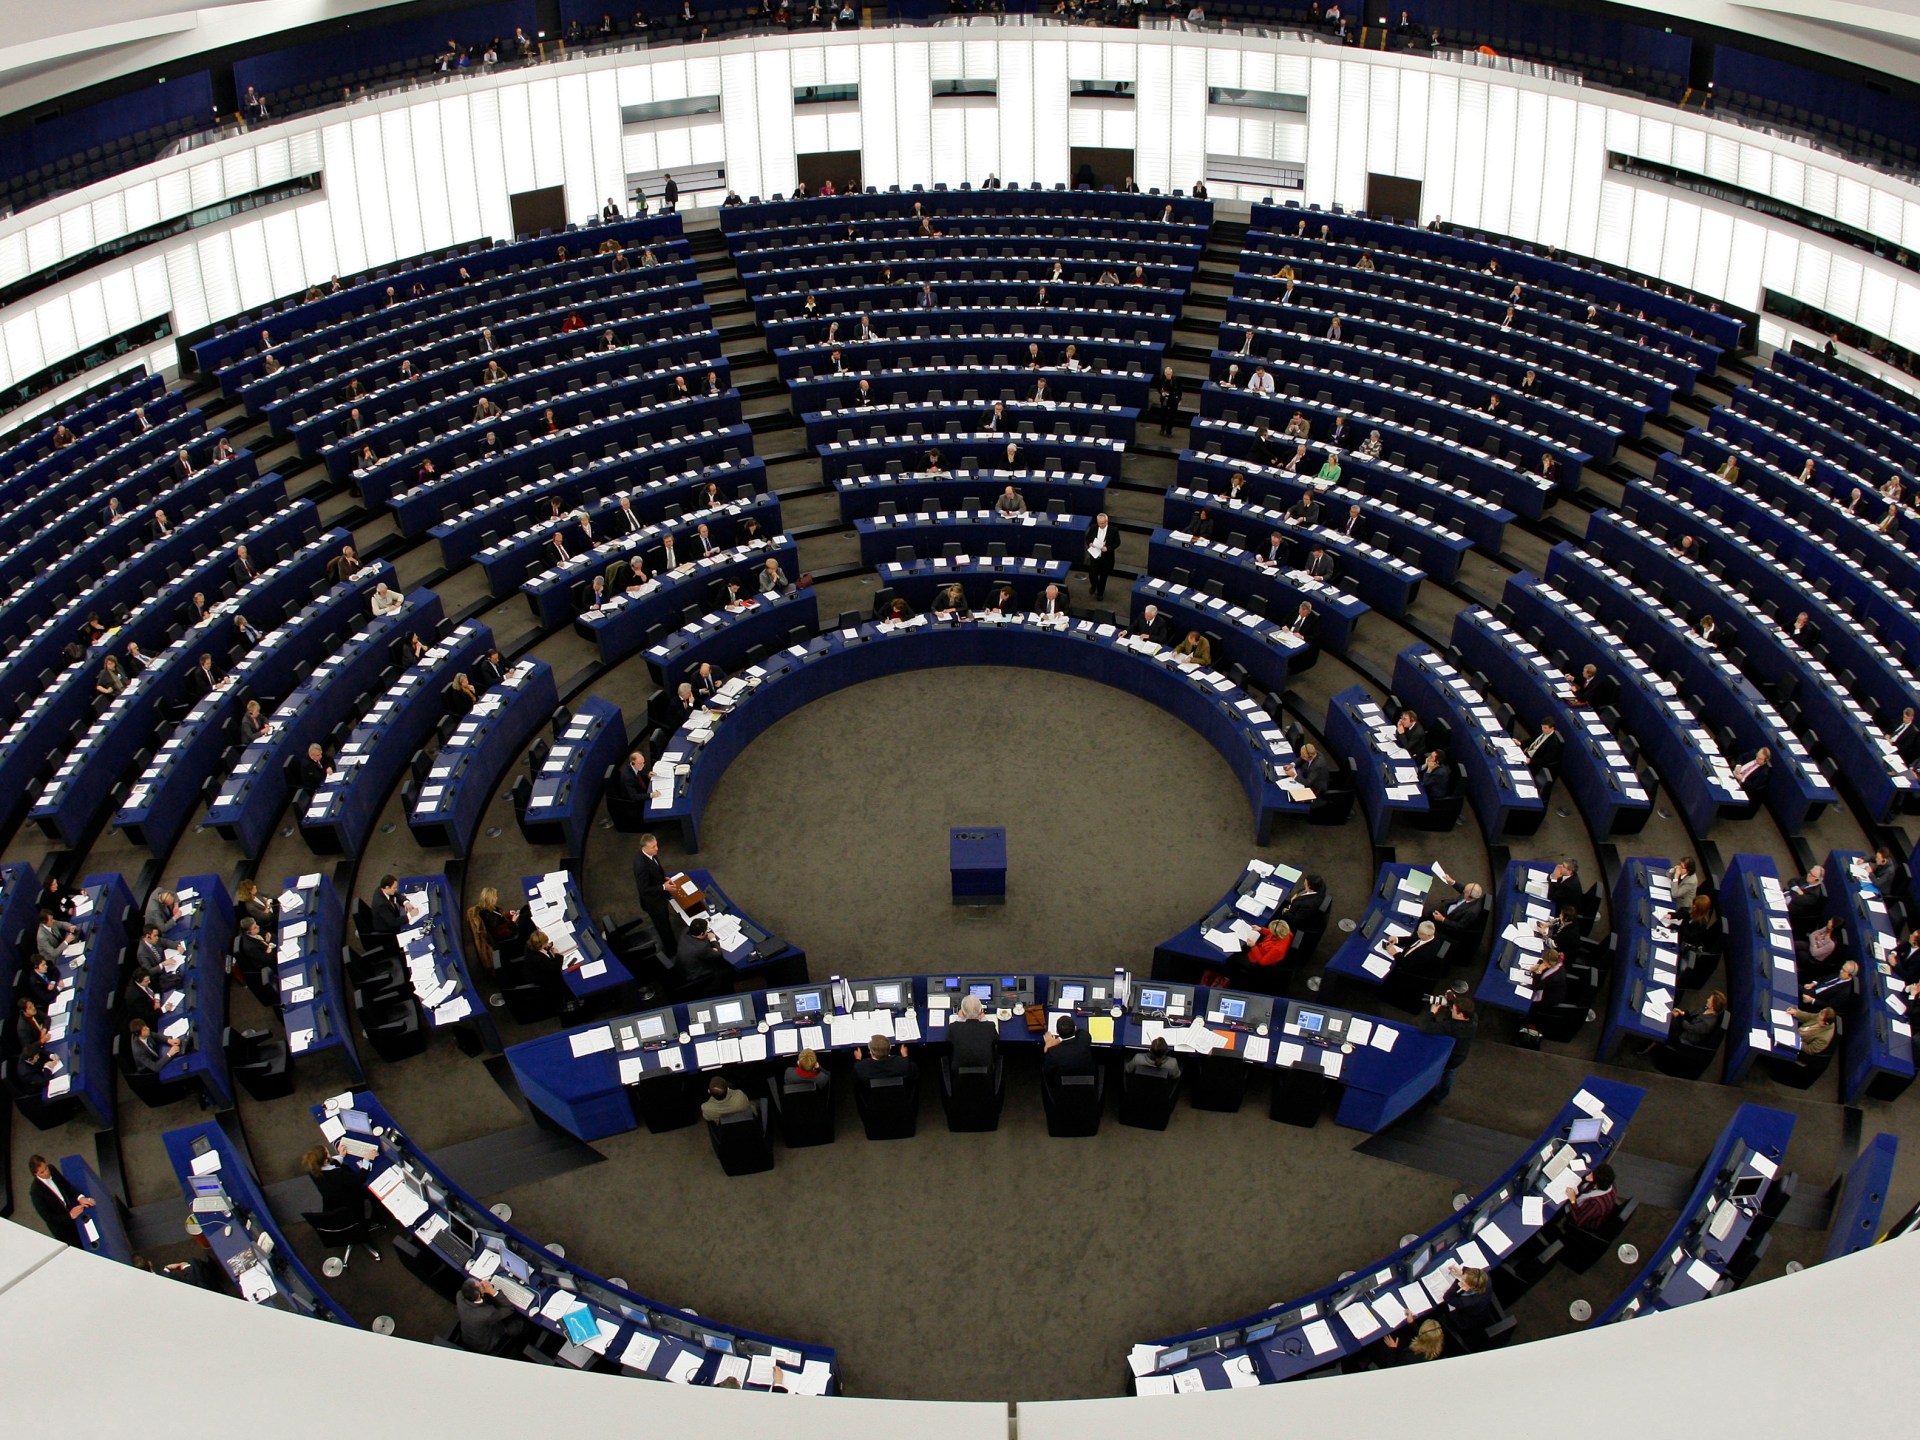 السن والإلزام والنساء.. قواعد متفاوتة في انتخابات البرلمان الأوروبي | أخبار – البوكس نيوز